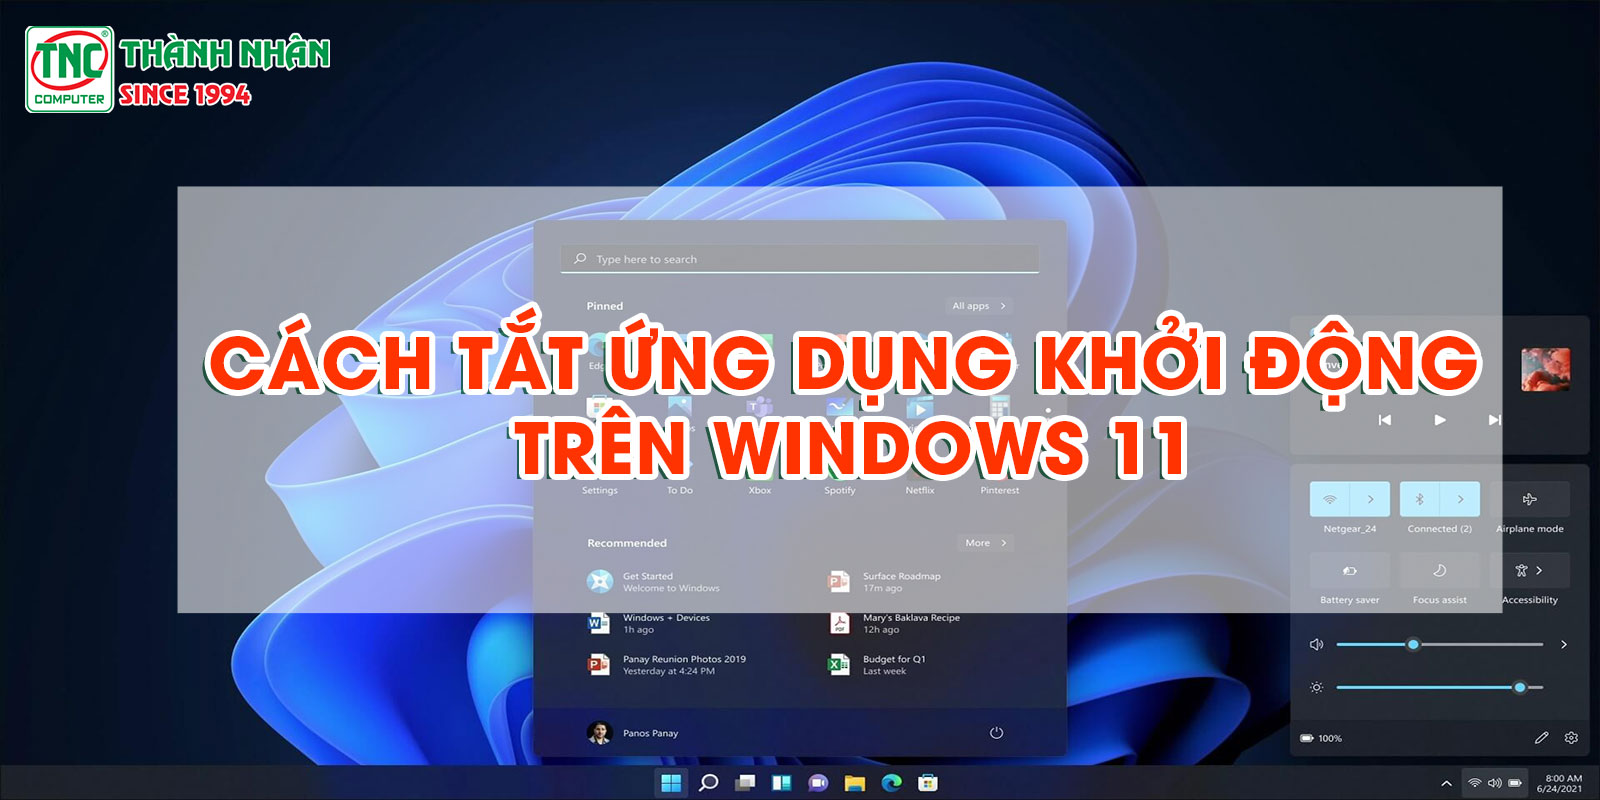 Cách tắt ứng dụng khởi động trên Windows 11